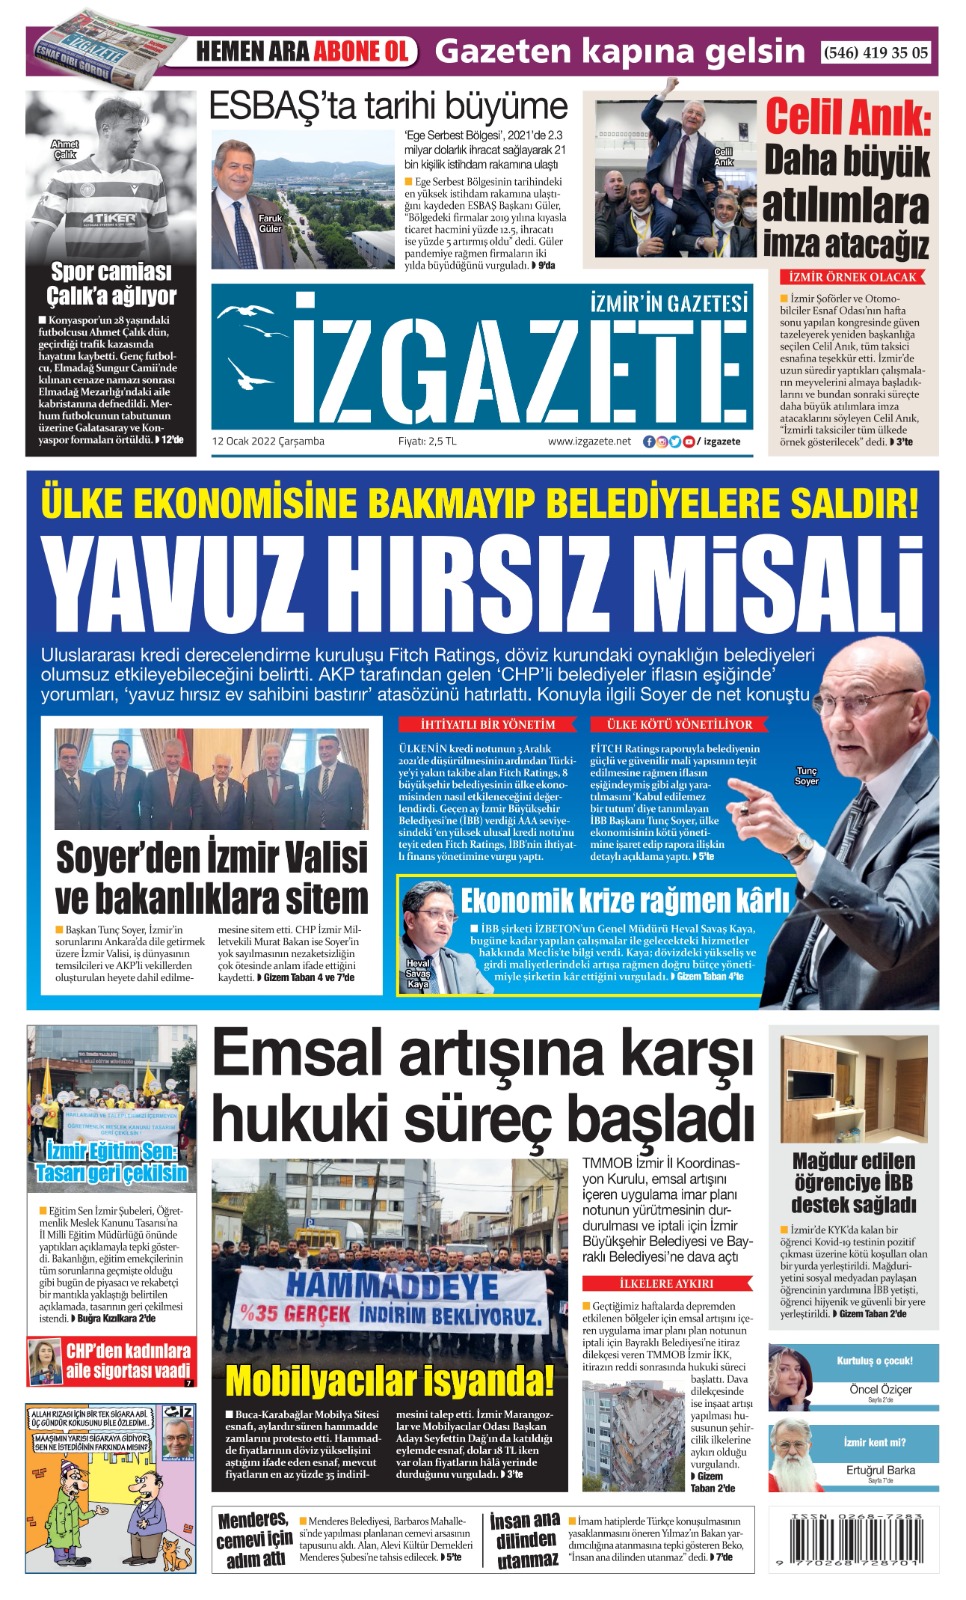 İz Gazete - İzmir'in Gazetesi - 12.01.2022 Manşeti